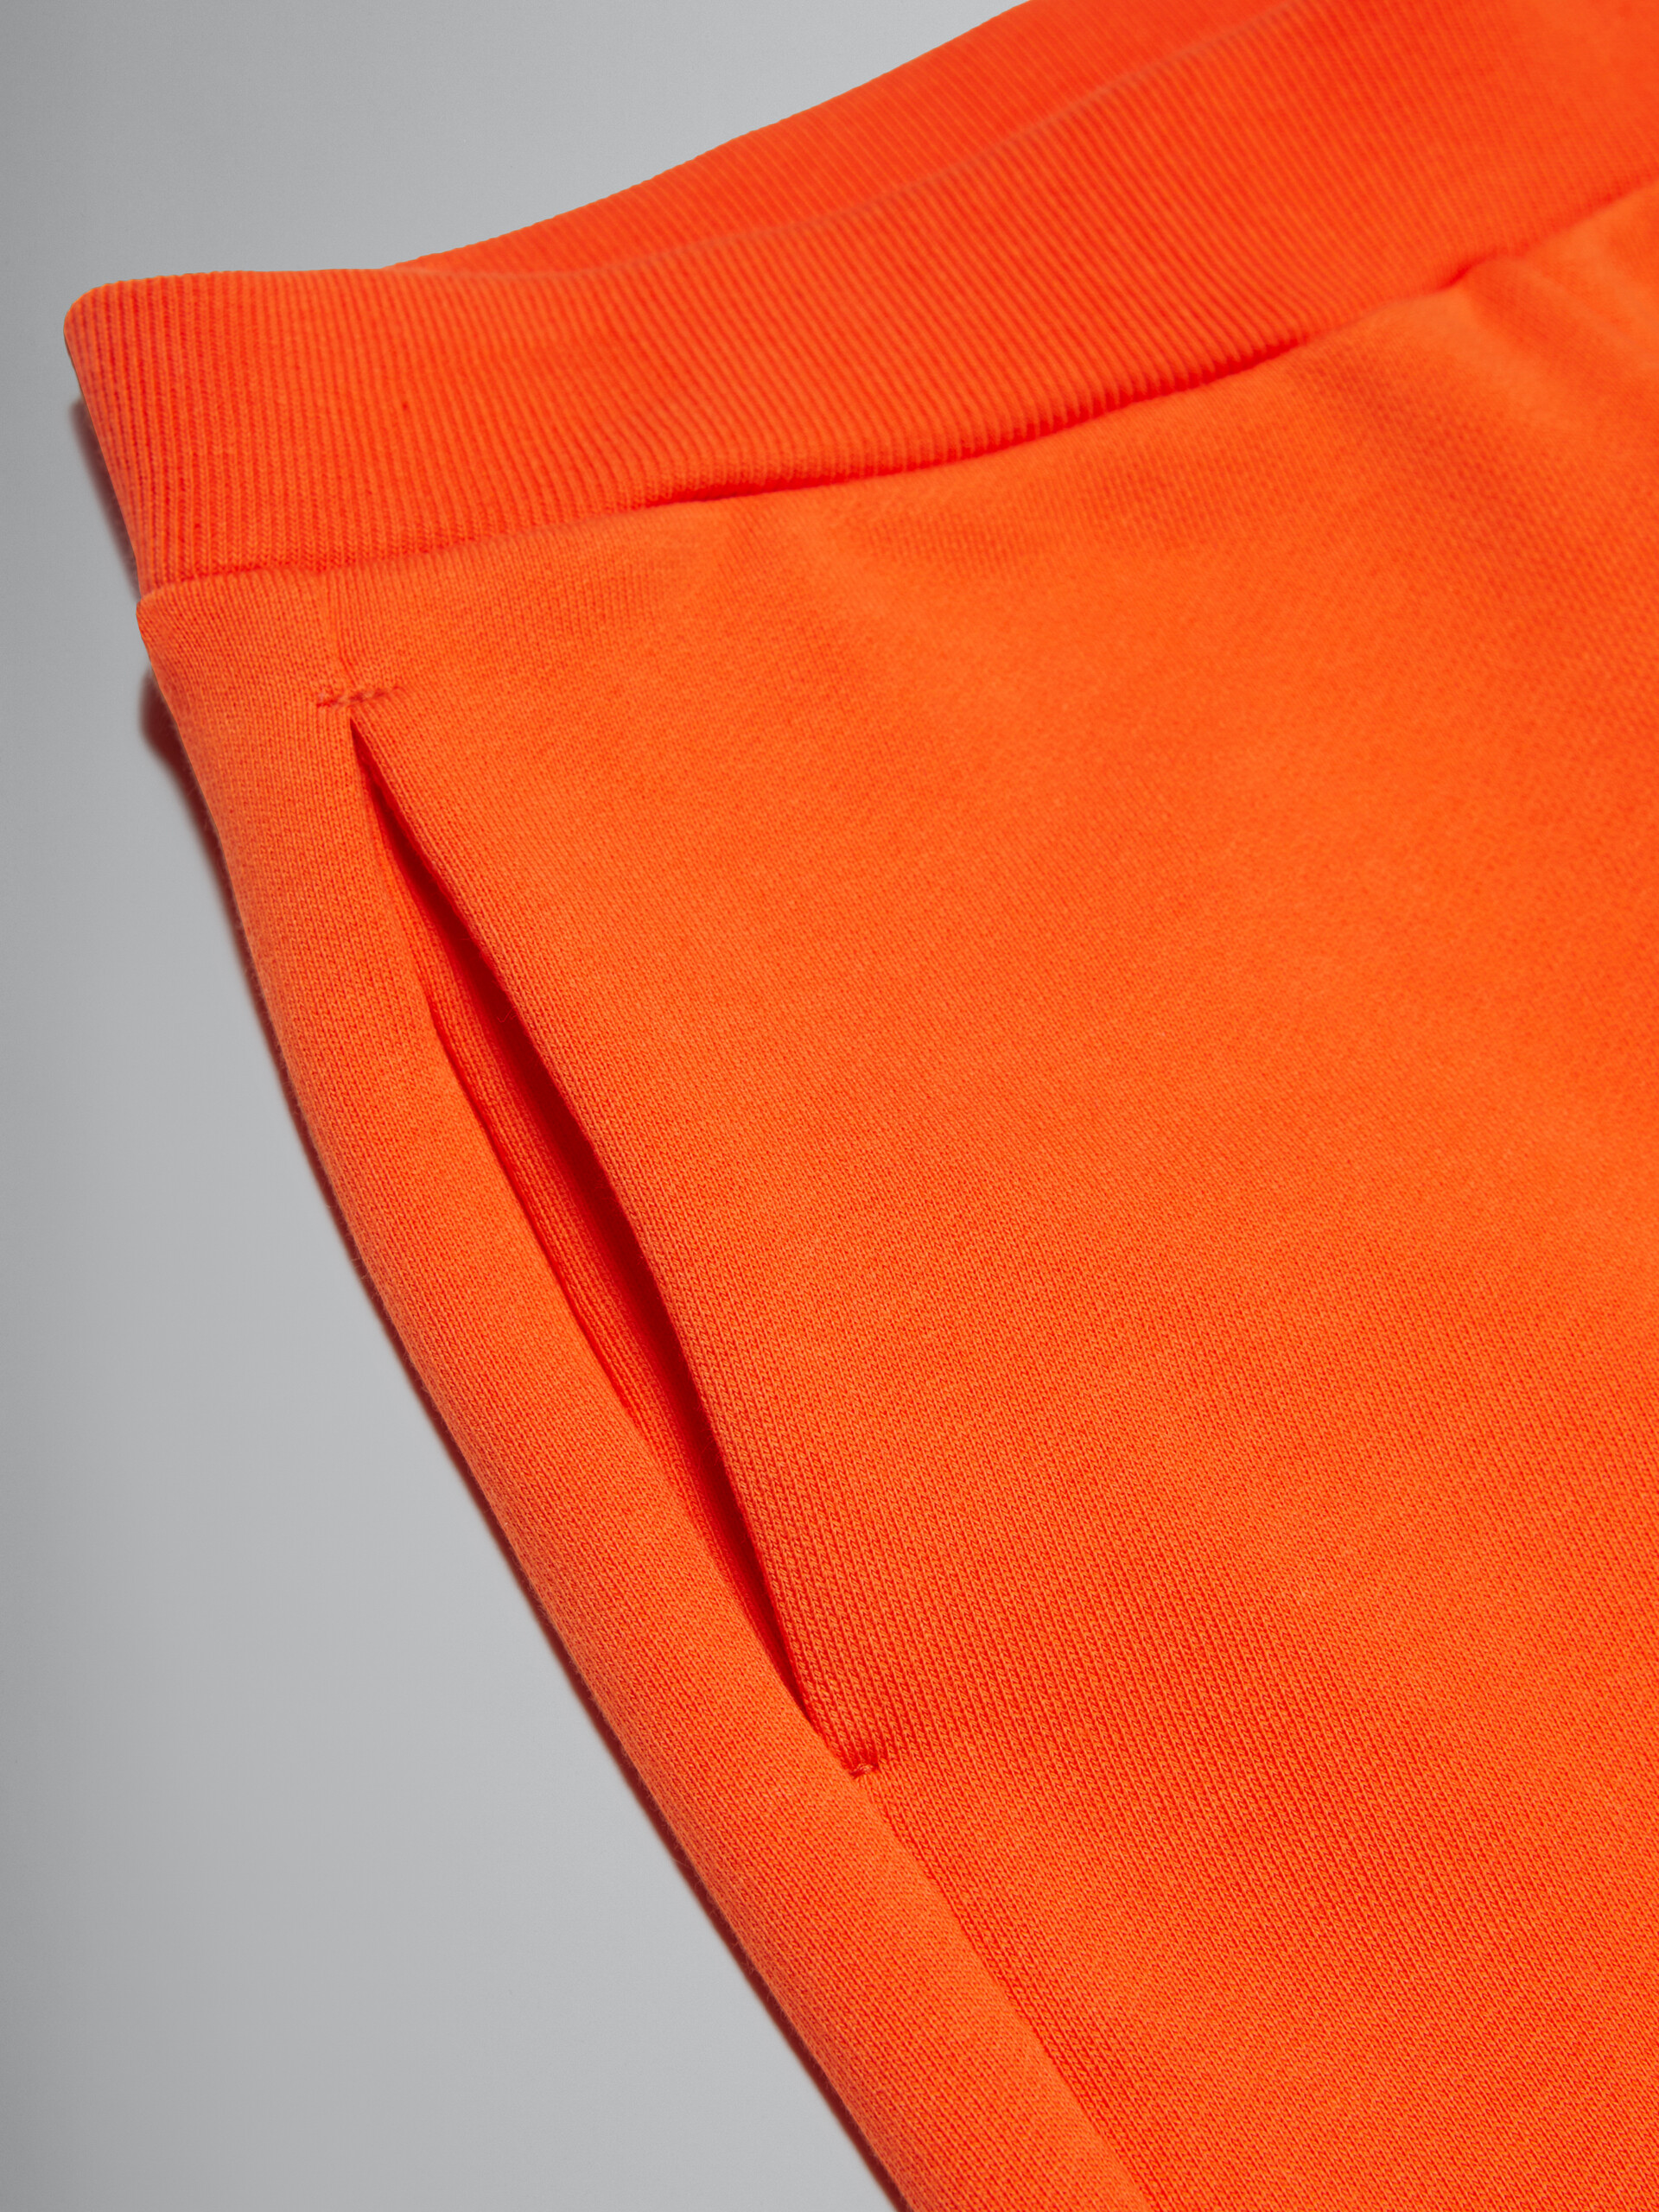 Orange fleece shorts with Round logo - Pants - Image 4